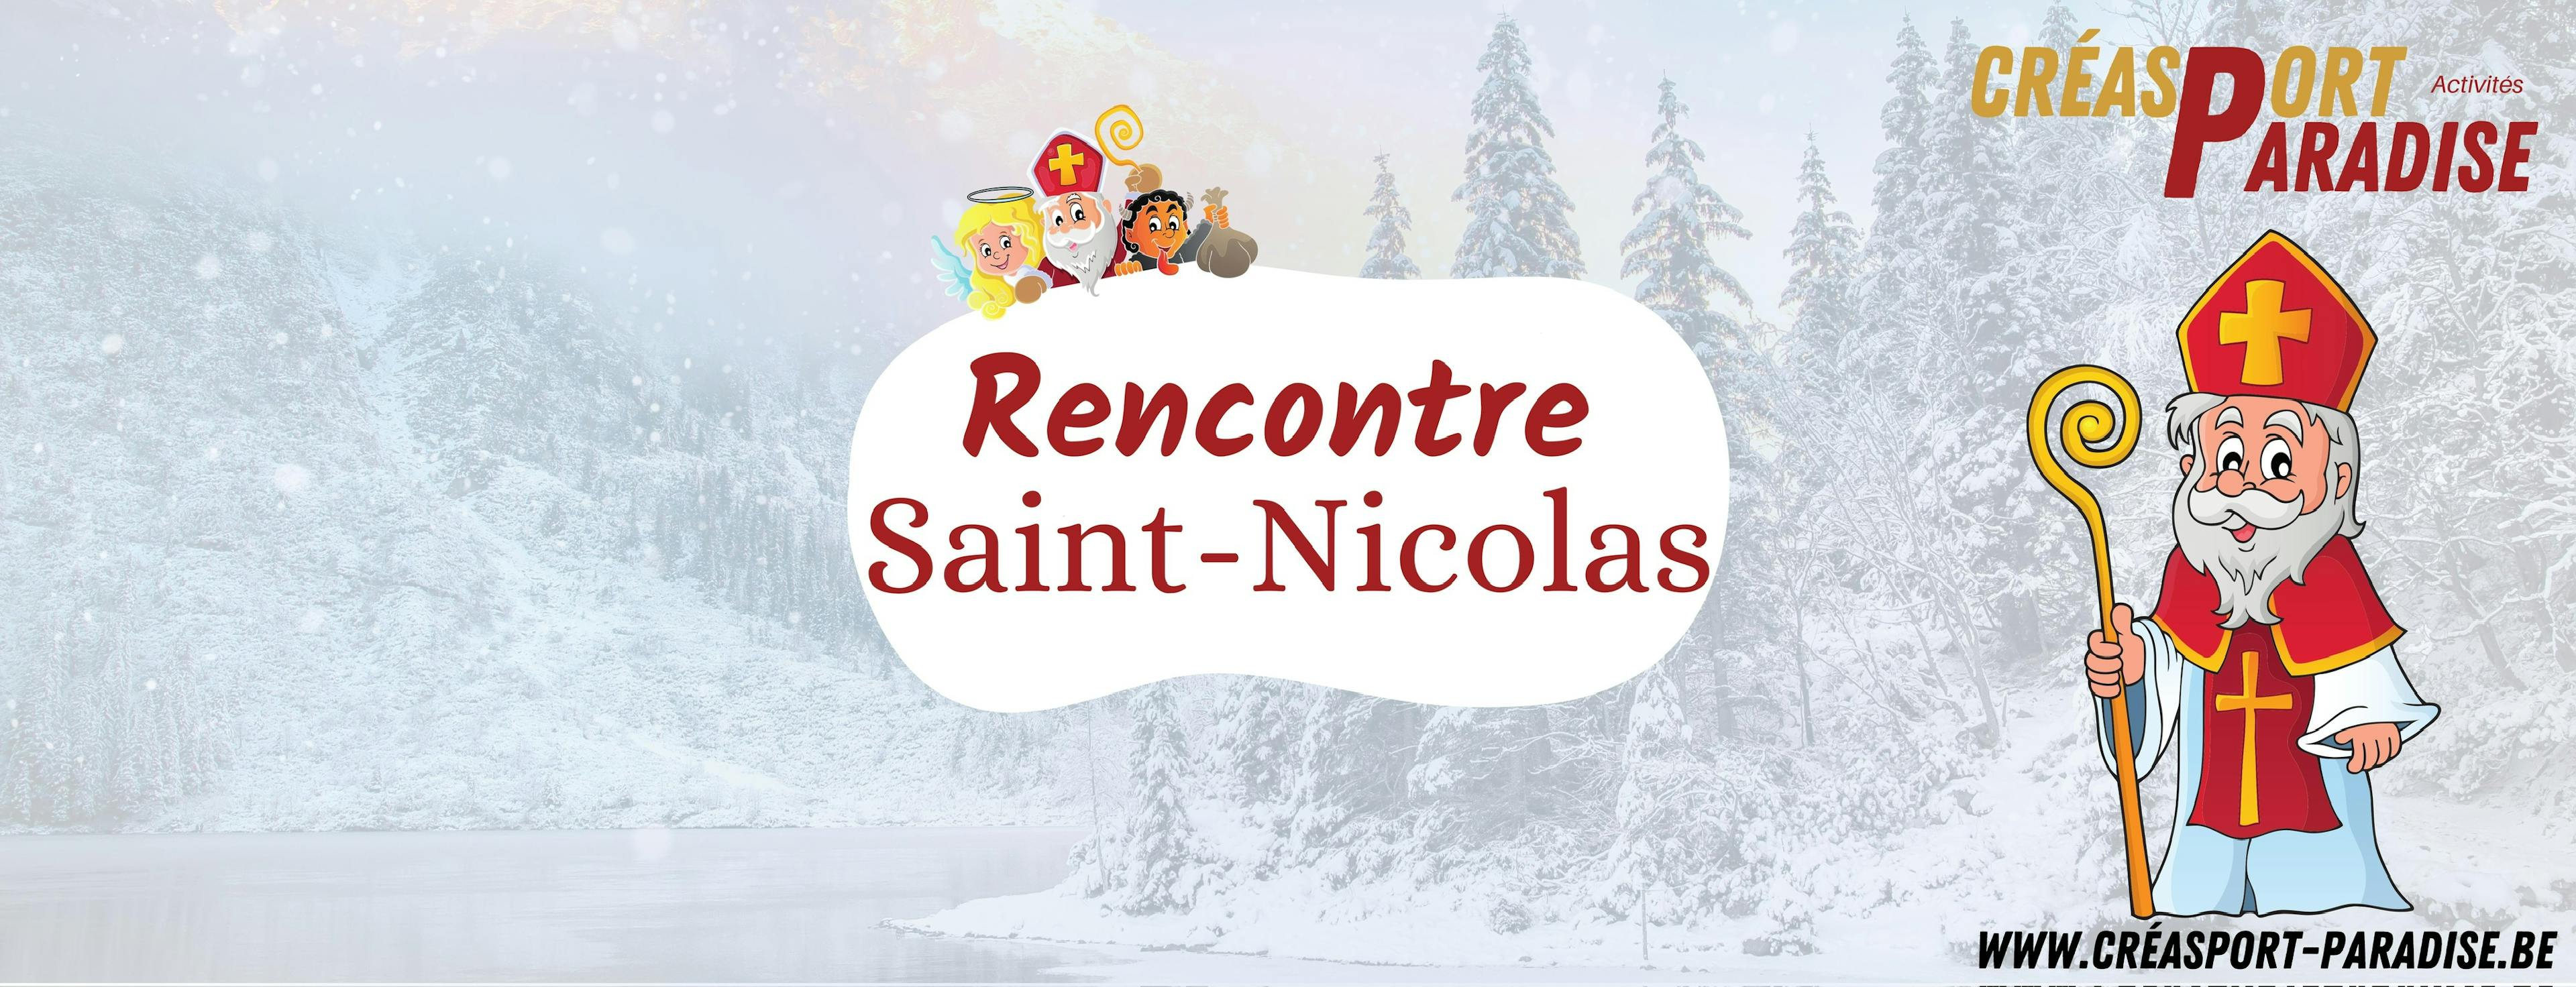 Erratum: Rencontre Saint-Nicolas